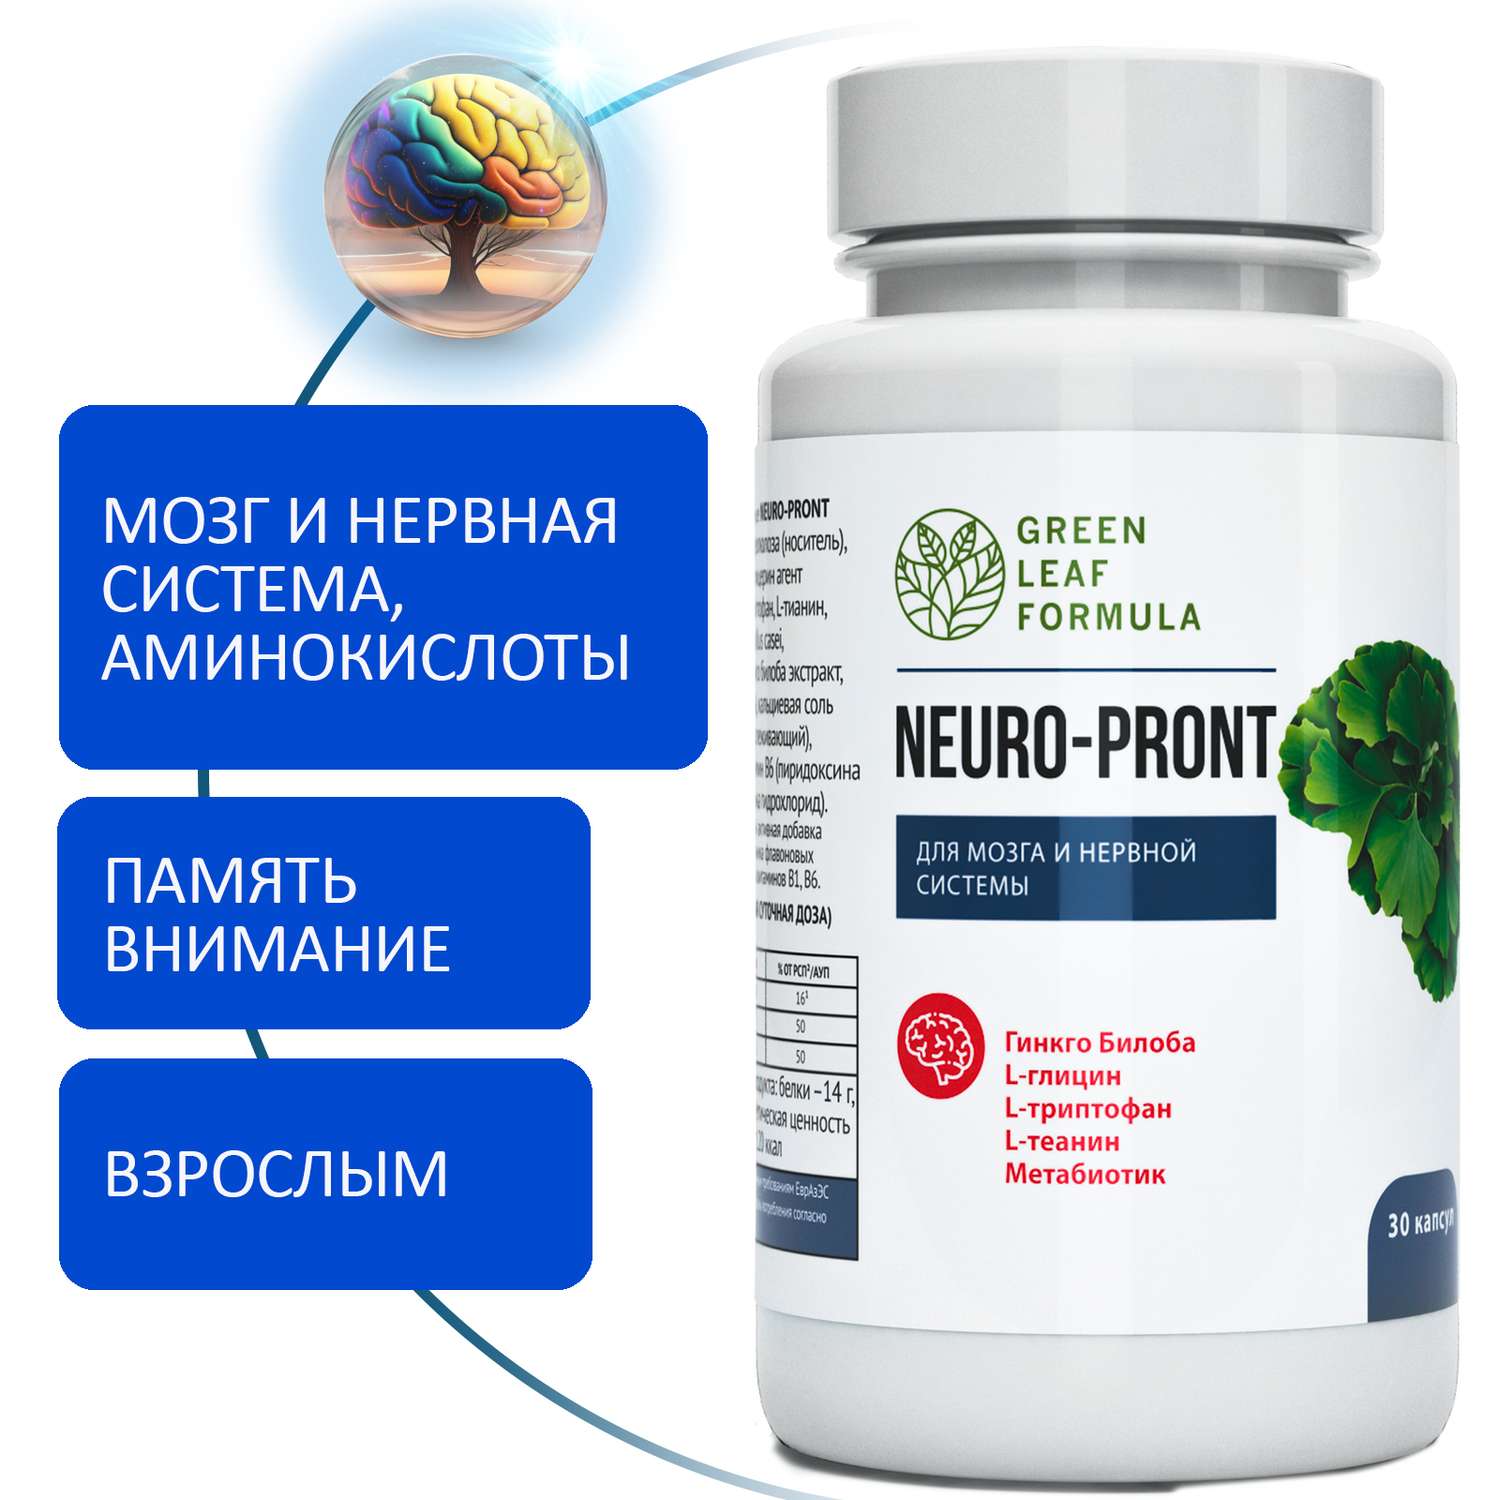 Витамины для мозга Green Leaf Formula для нервной системы триптофан глицин для памяти внимания от стресса и депрессии - фото 1